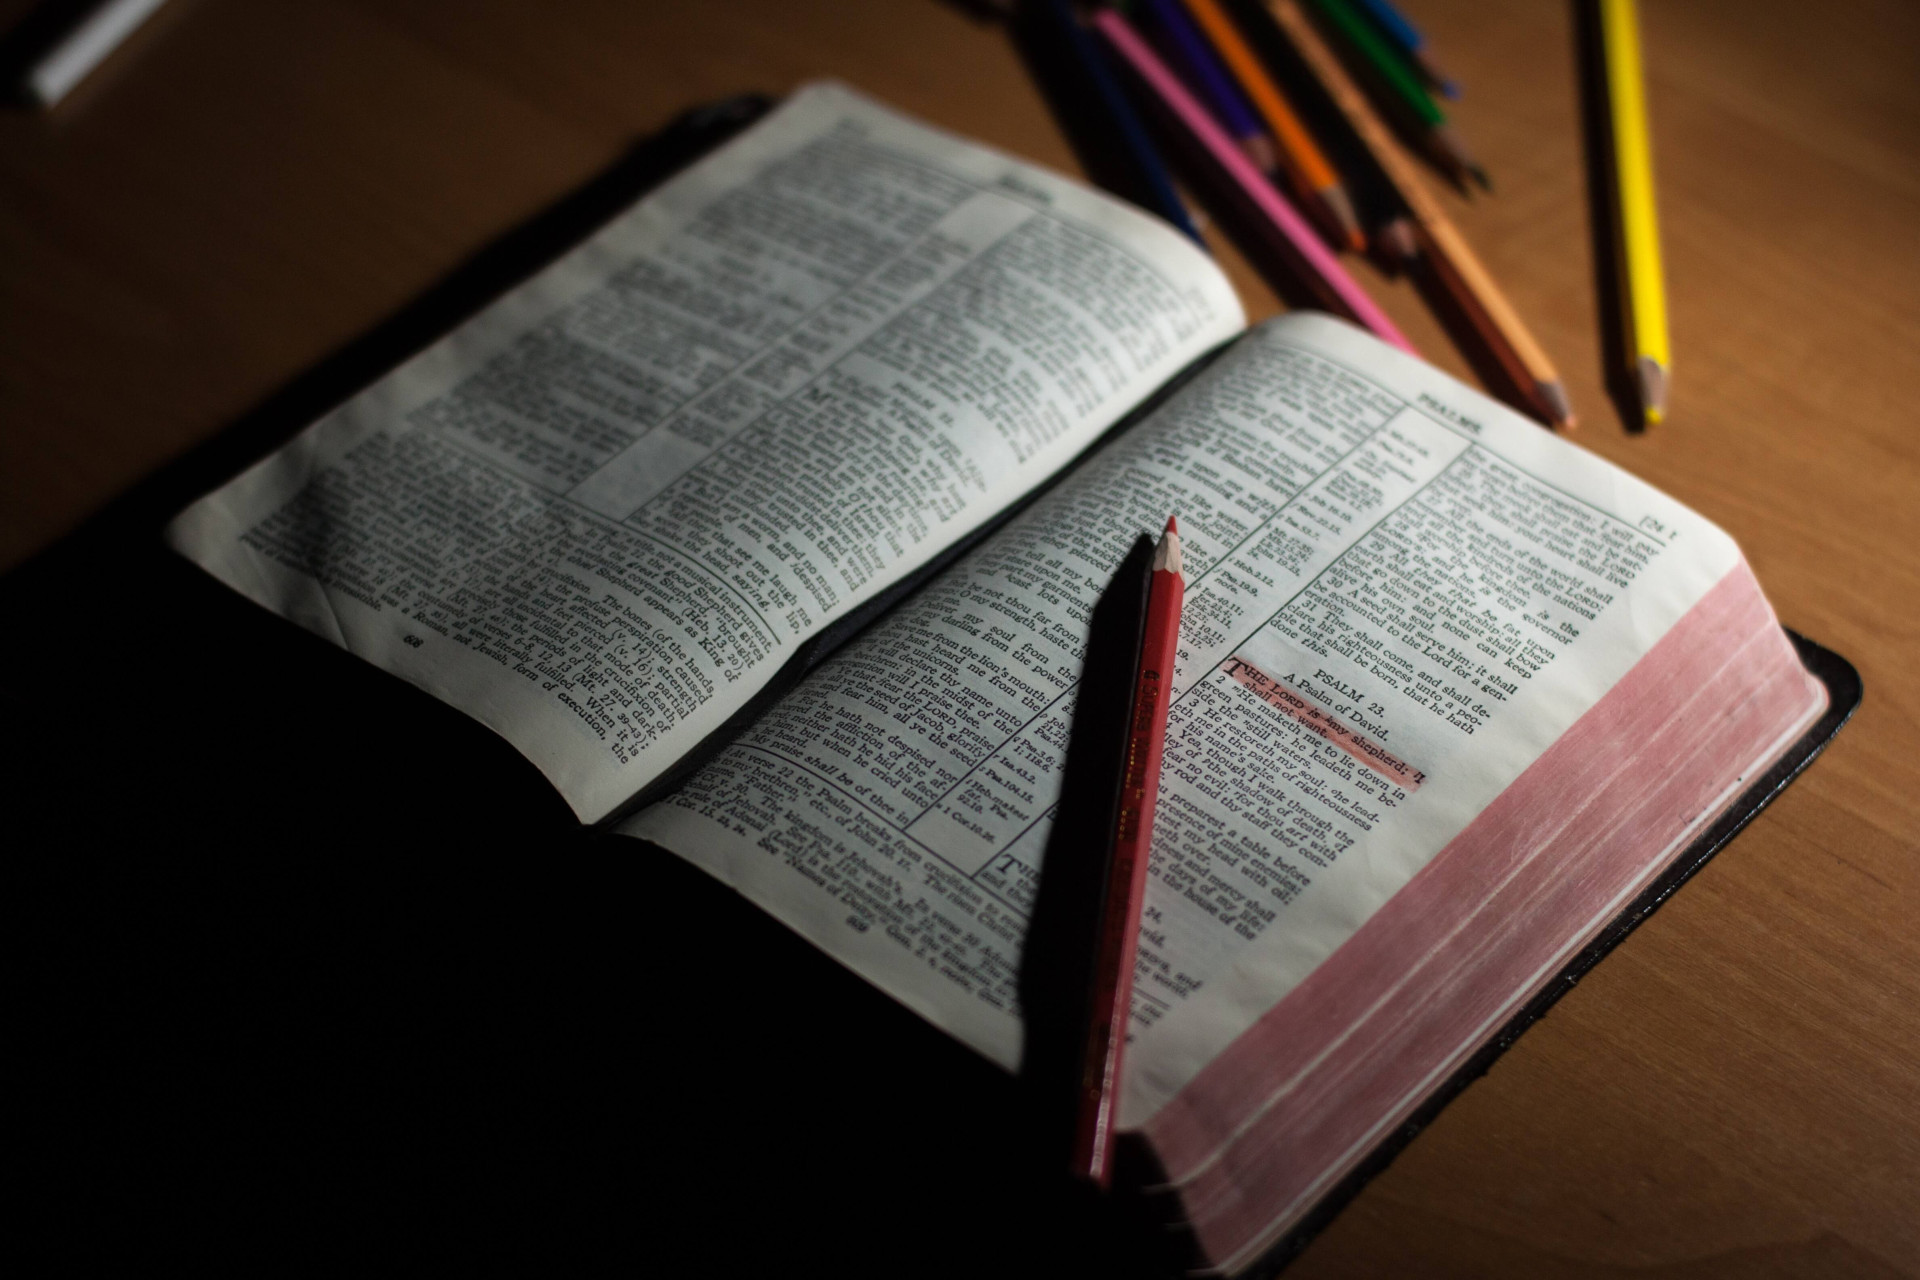 9 Salmos poderosos da Bíblia para conseguir renovar sua fé e tocar corações